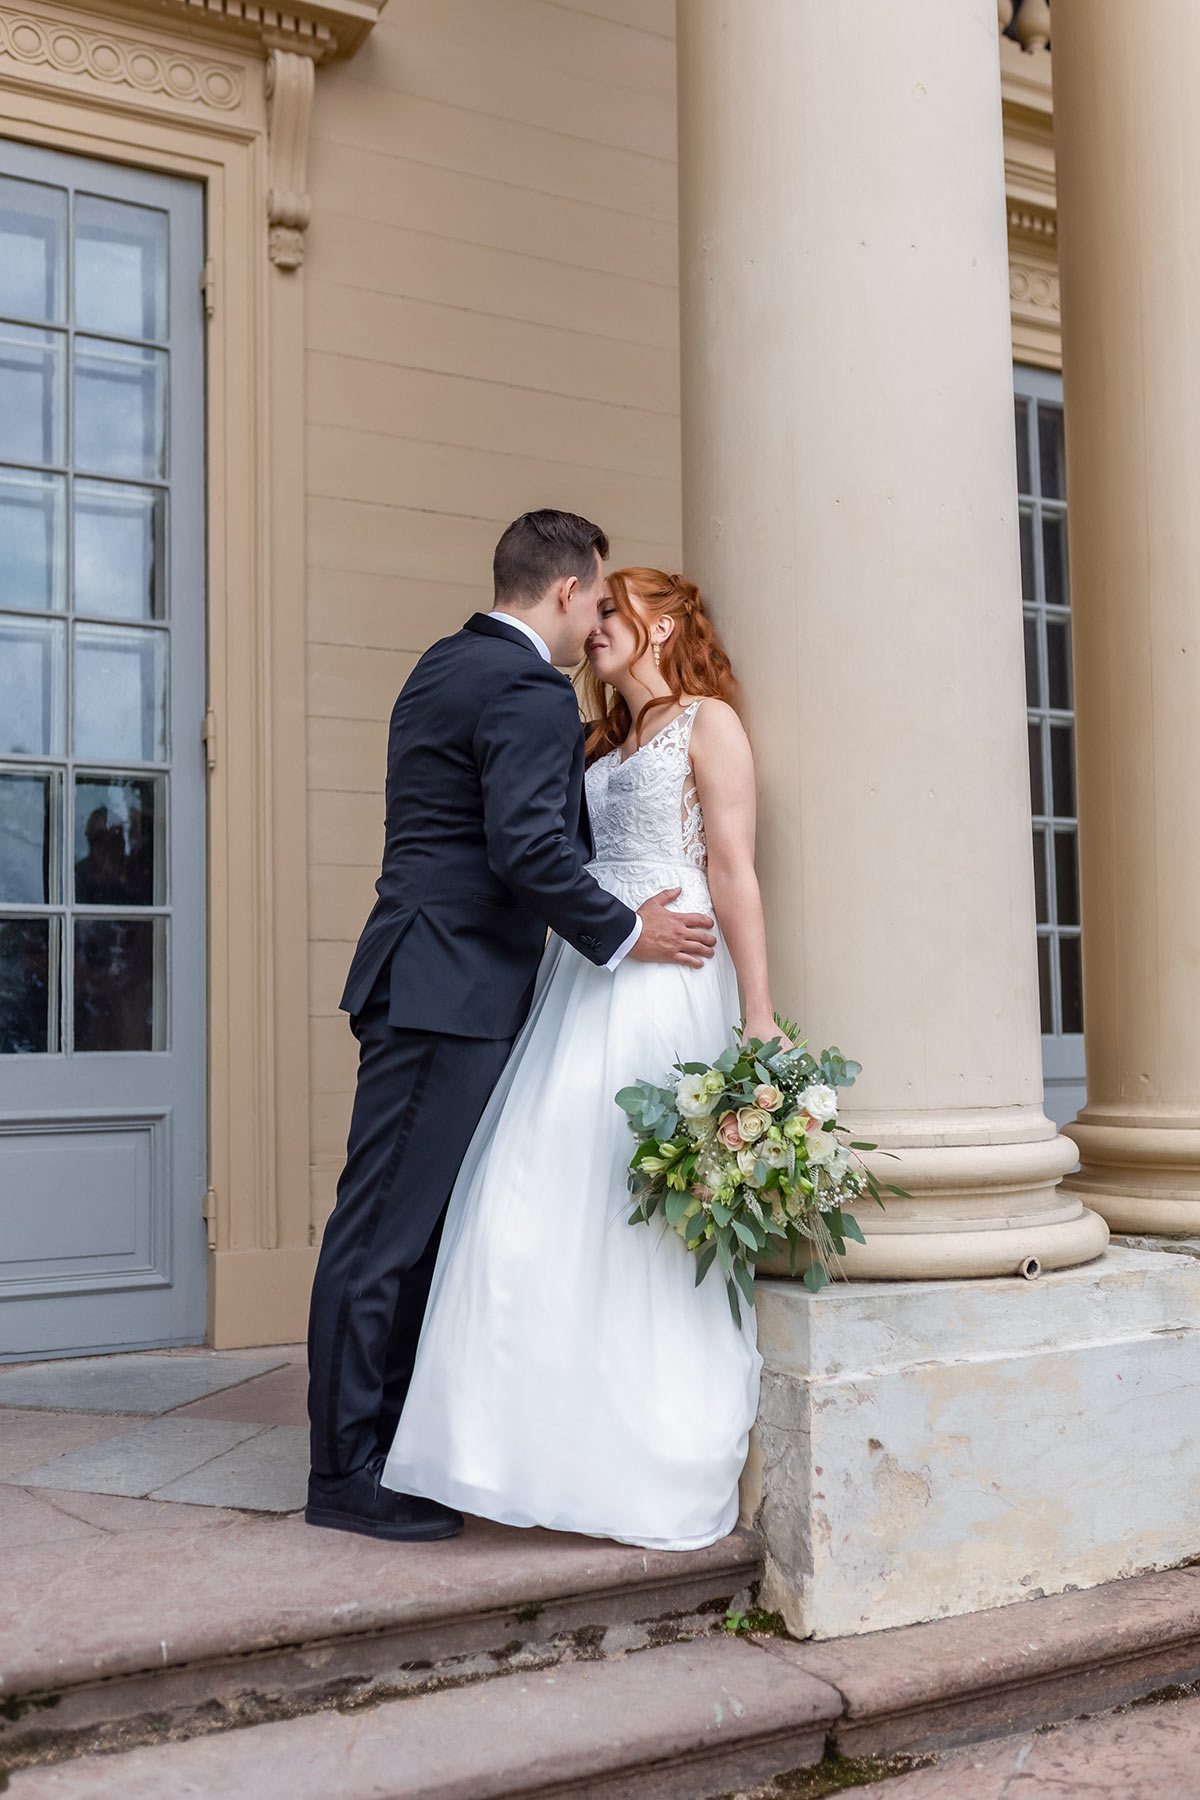 Ett bröllopspar pussas vid en vacker byggnad. Bruden lutar sig mot en pelare